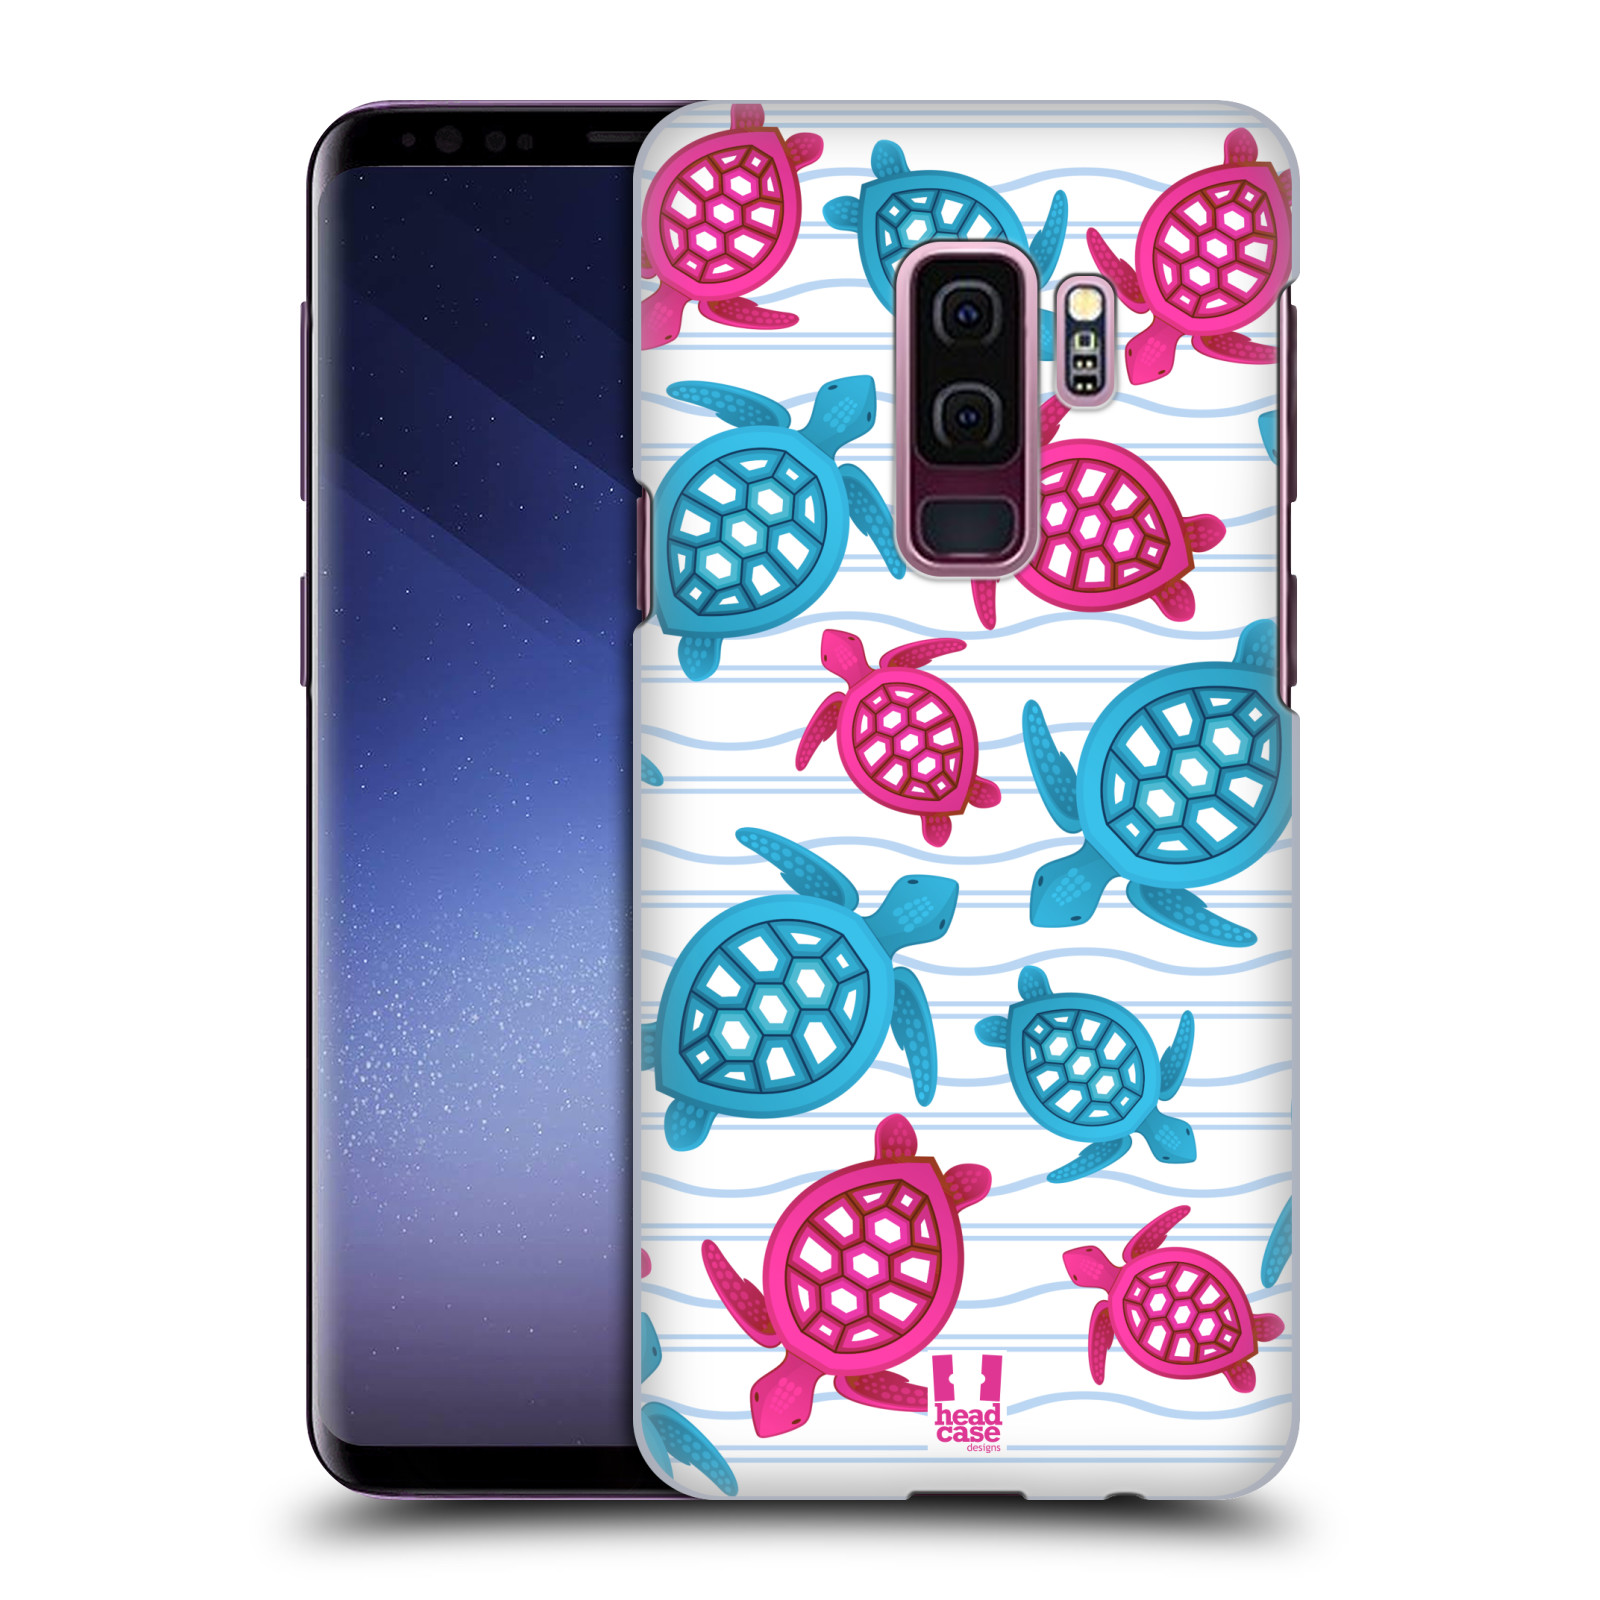 Zadní obal pro mobil Samsung Galaxy S9 PLUS - HEAD CASE - kreslený mořský vzor želvičky